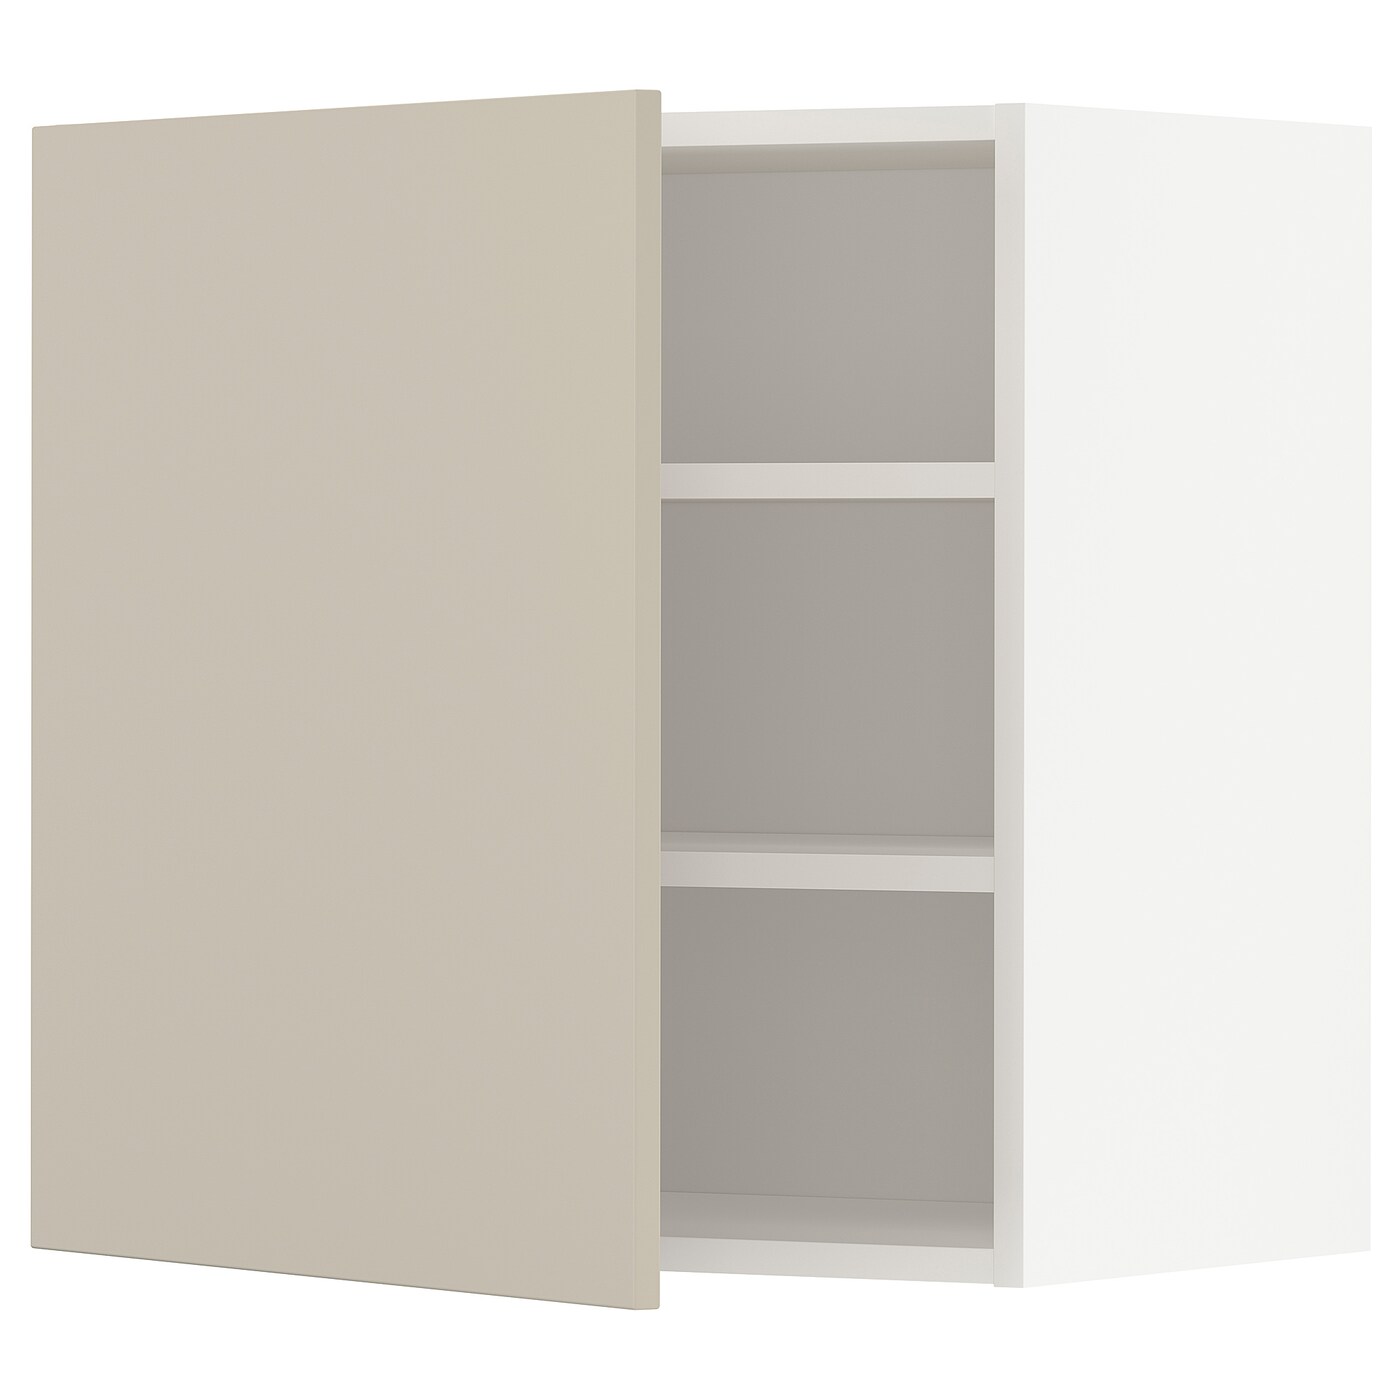 Навесной шкаф с полкой - METOD IKEA/ МЕТОД ИКЕА, 60х60 см, белый/светло-коричневый